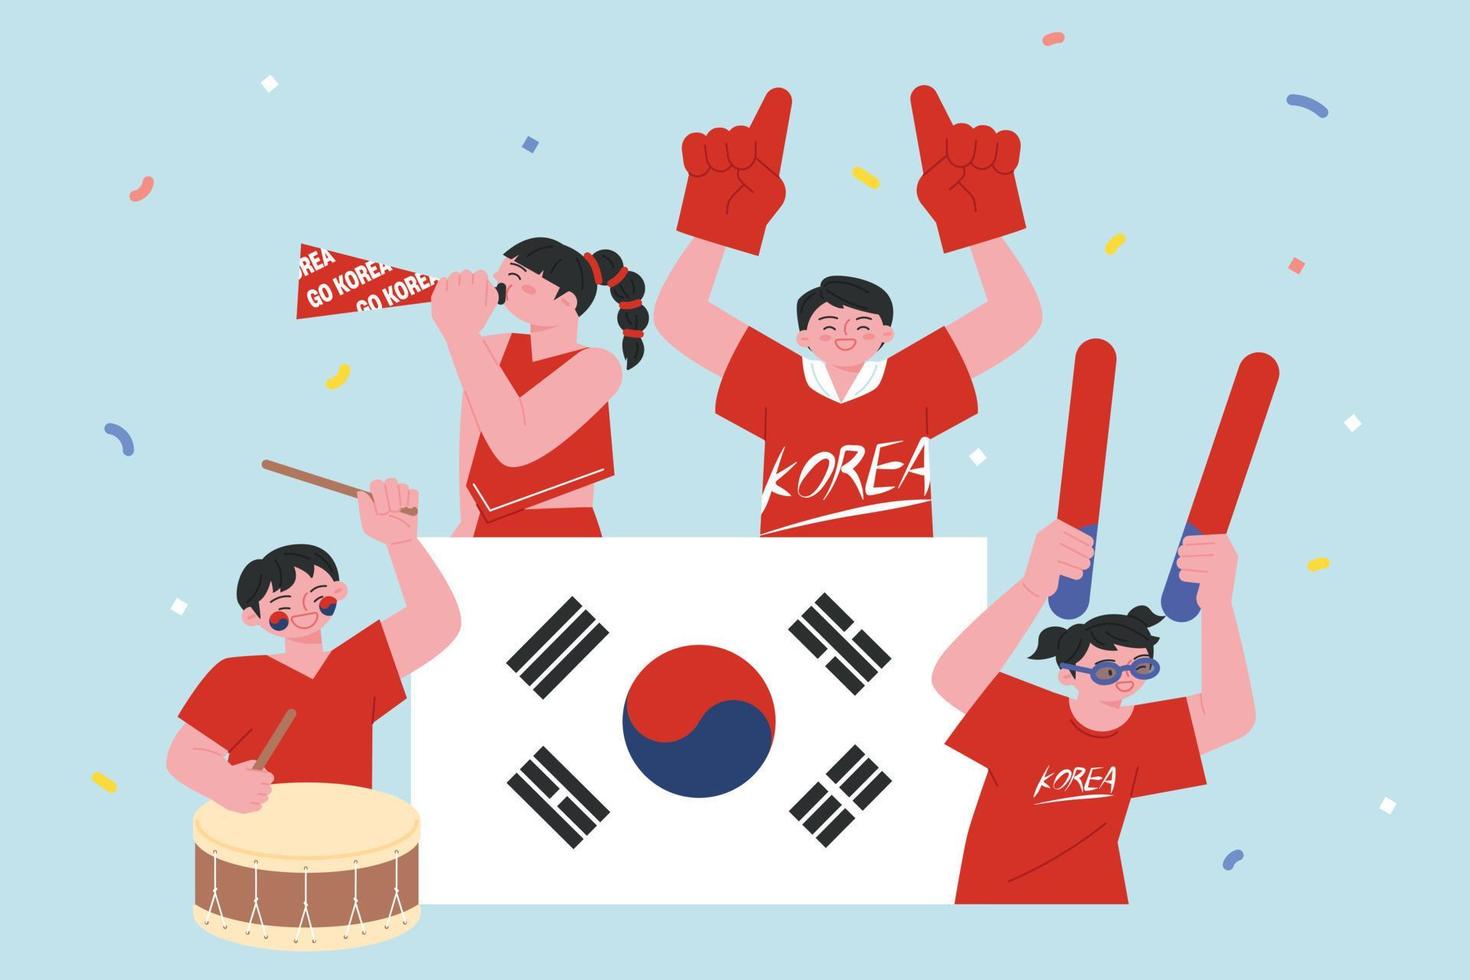 equipo de animadores de fútbol coreano diablos rojos. con el taegeukgi en el centro, la gente anima con herramientas de animación alrededor. vector